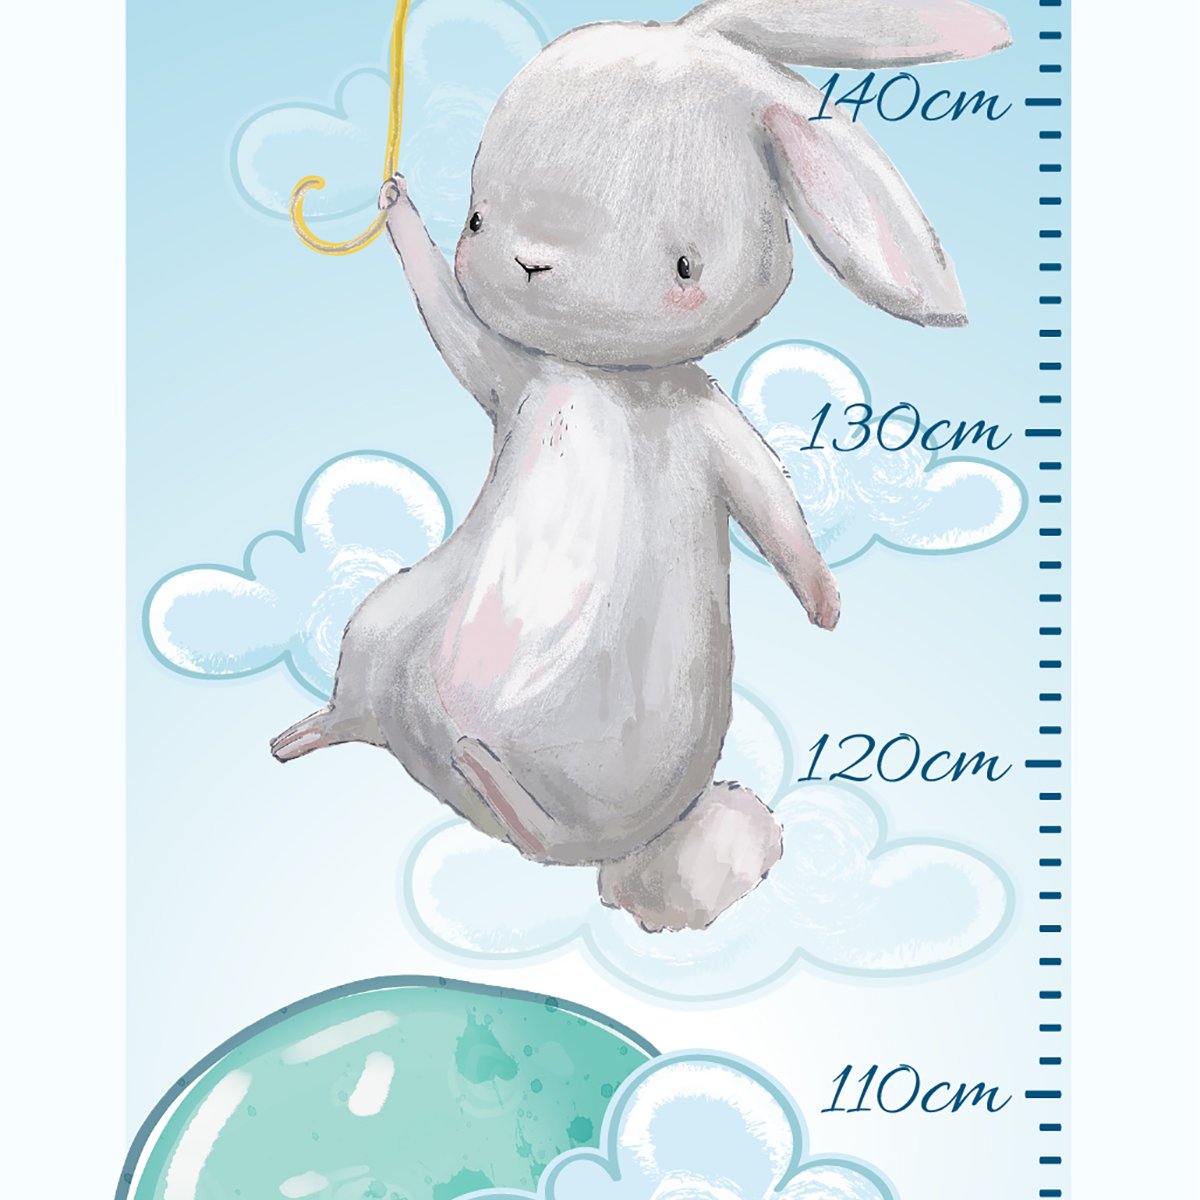 Naklejka miarka wzrostu dla dziecka - króliczek i baloniki#kolor_kolorowy